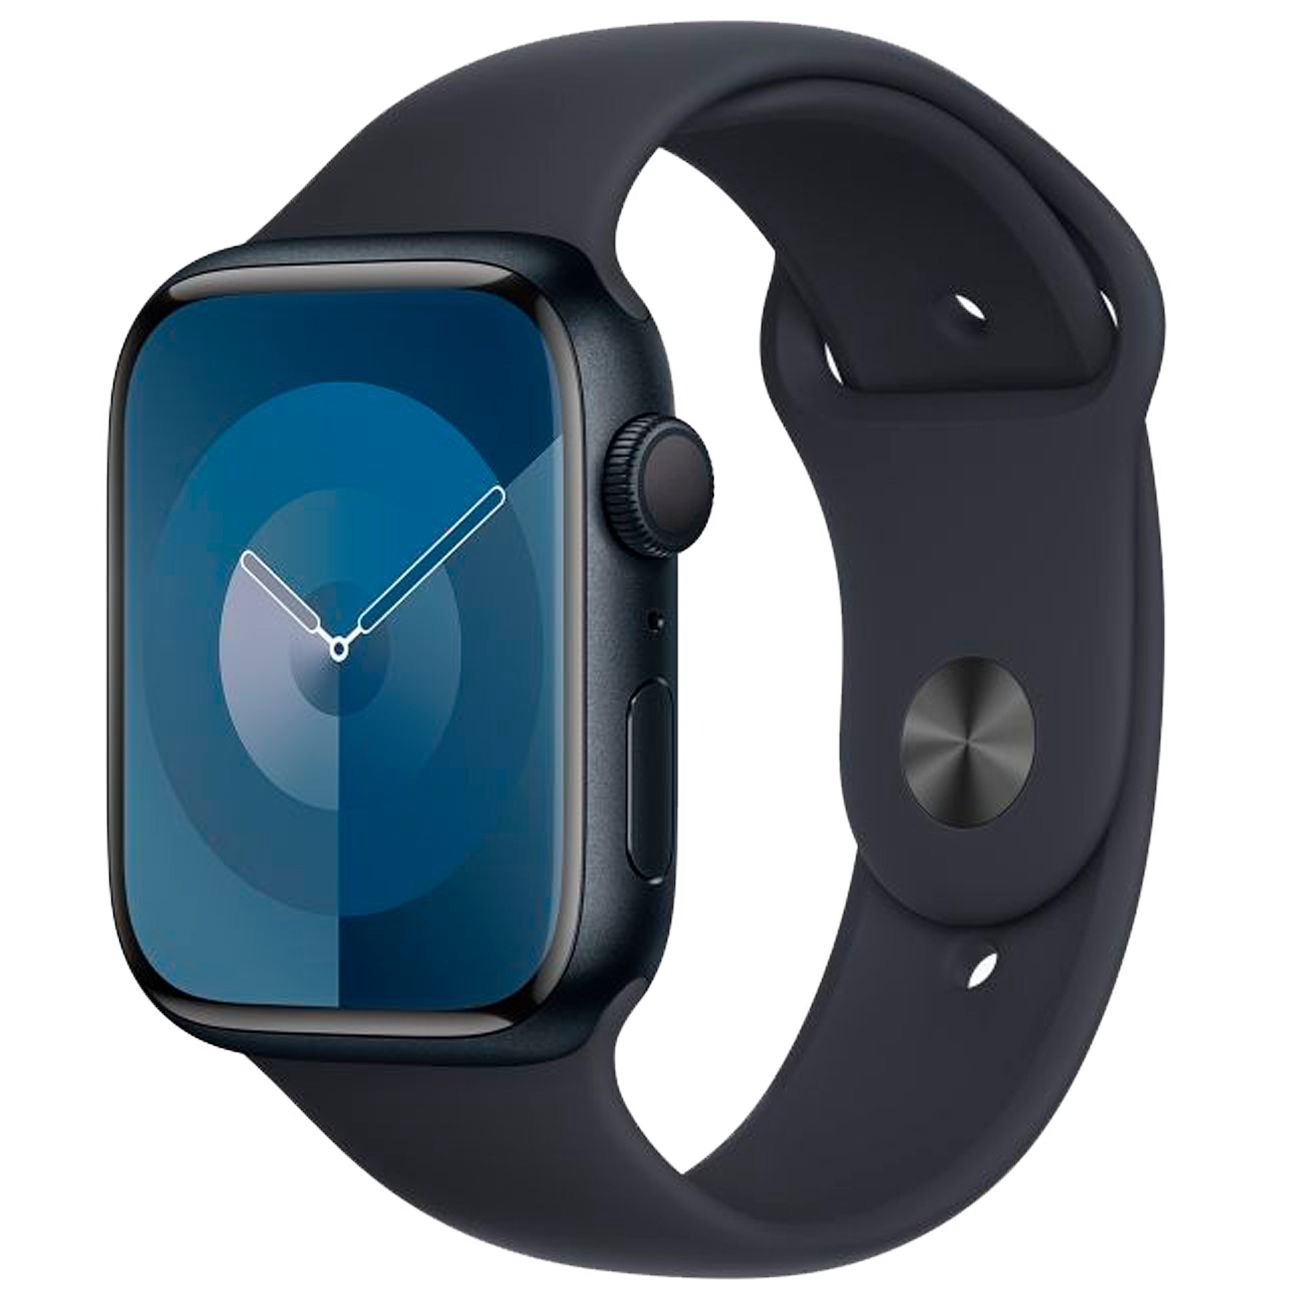 Купить смарт-часы apple watch s9 45mm midnight aluminium Apple Watch 9 в официальном магазине Apple, Samsung, Xiaomi. iPixel.ru Купить, заказ, кредит, рассрочка, отзывы,  характеристики, цена,  фотографии, в подарок.